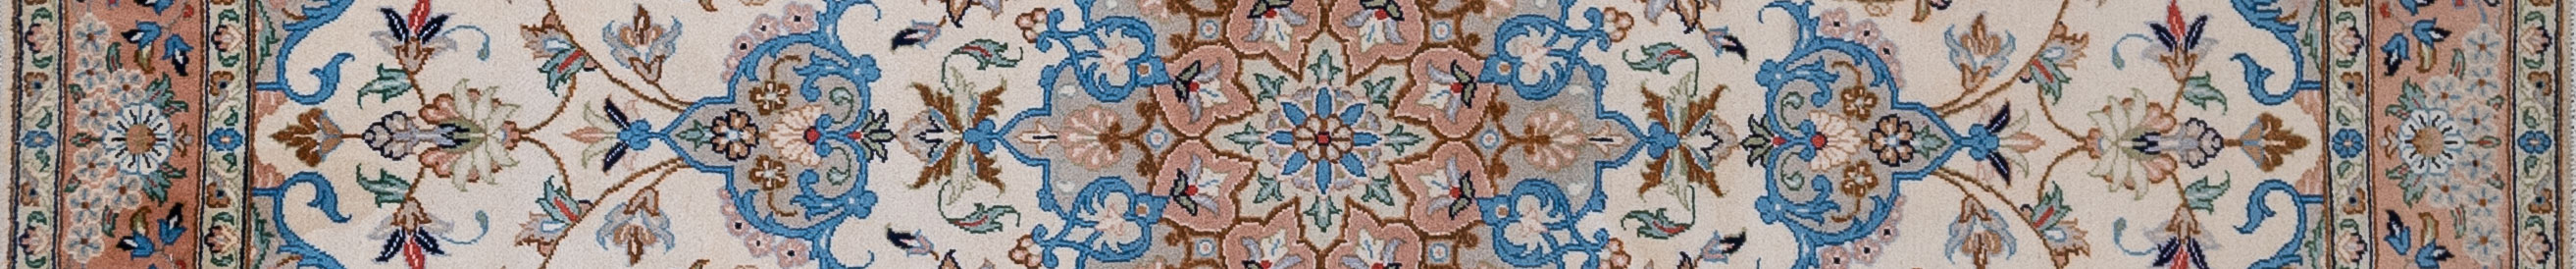 Ardekan Persian Carpet Rug N1Carpet Canada Montreal Tapis Persan 1890